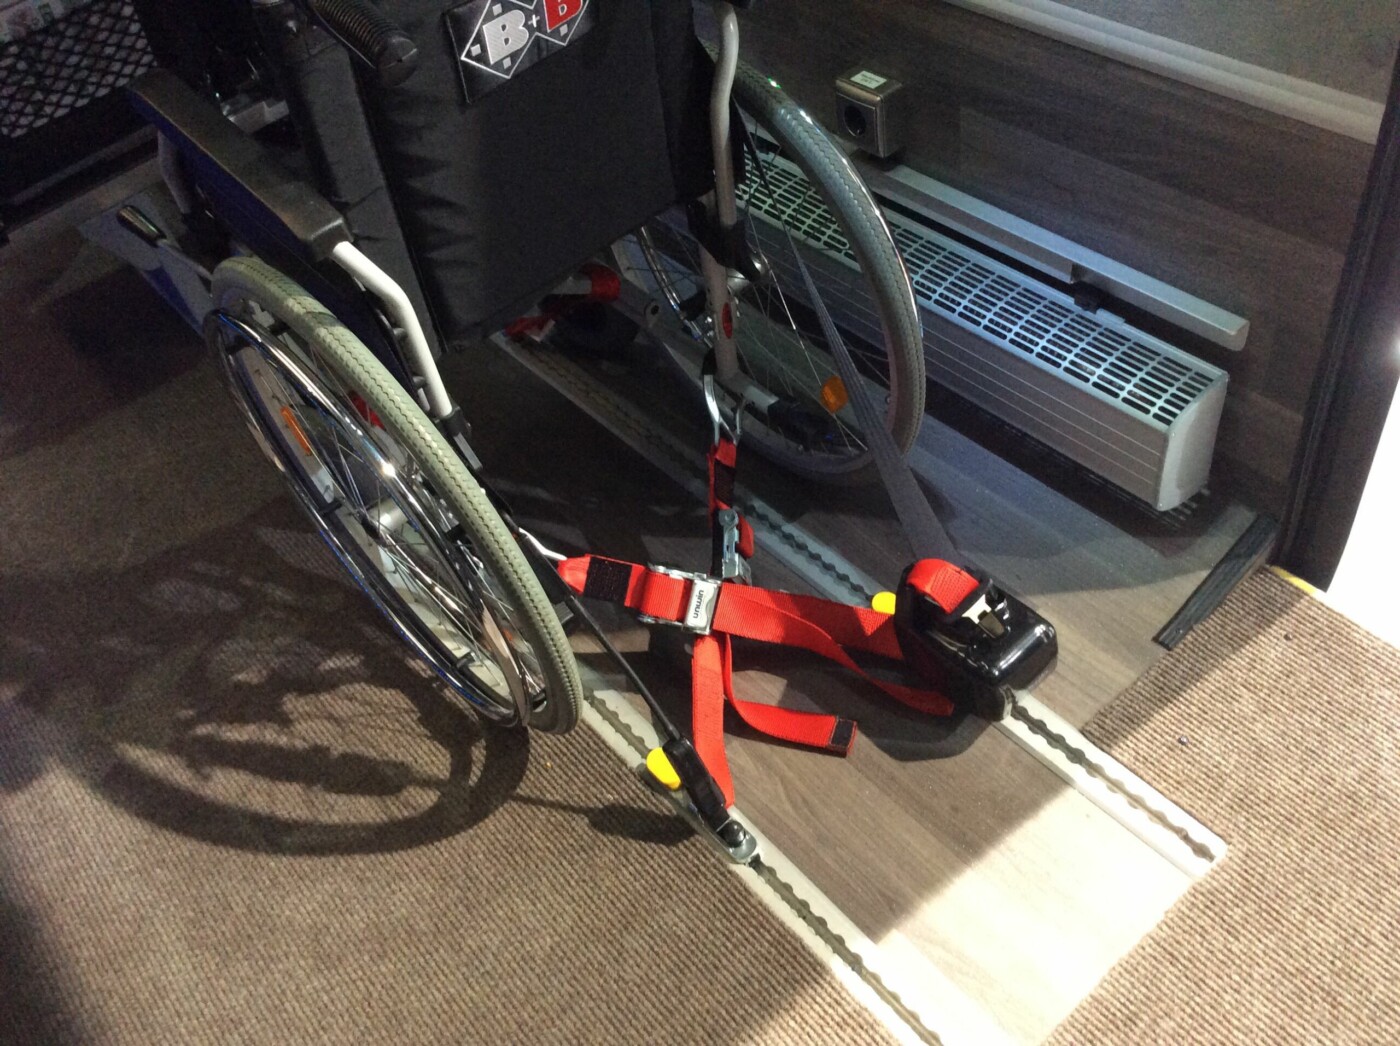 Bund verkompliziert Mobilität von Menschen im Rollstuhl